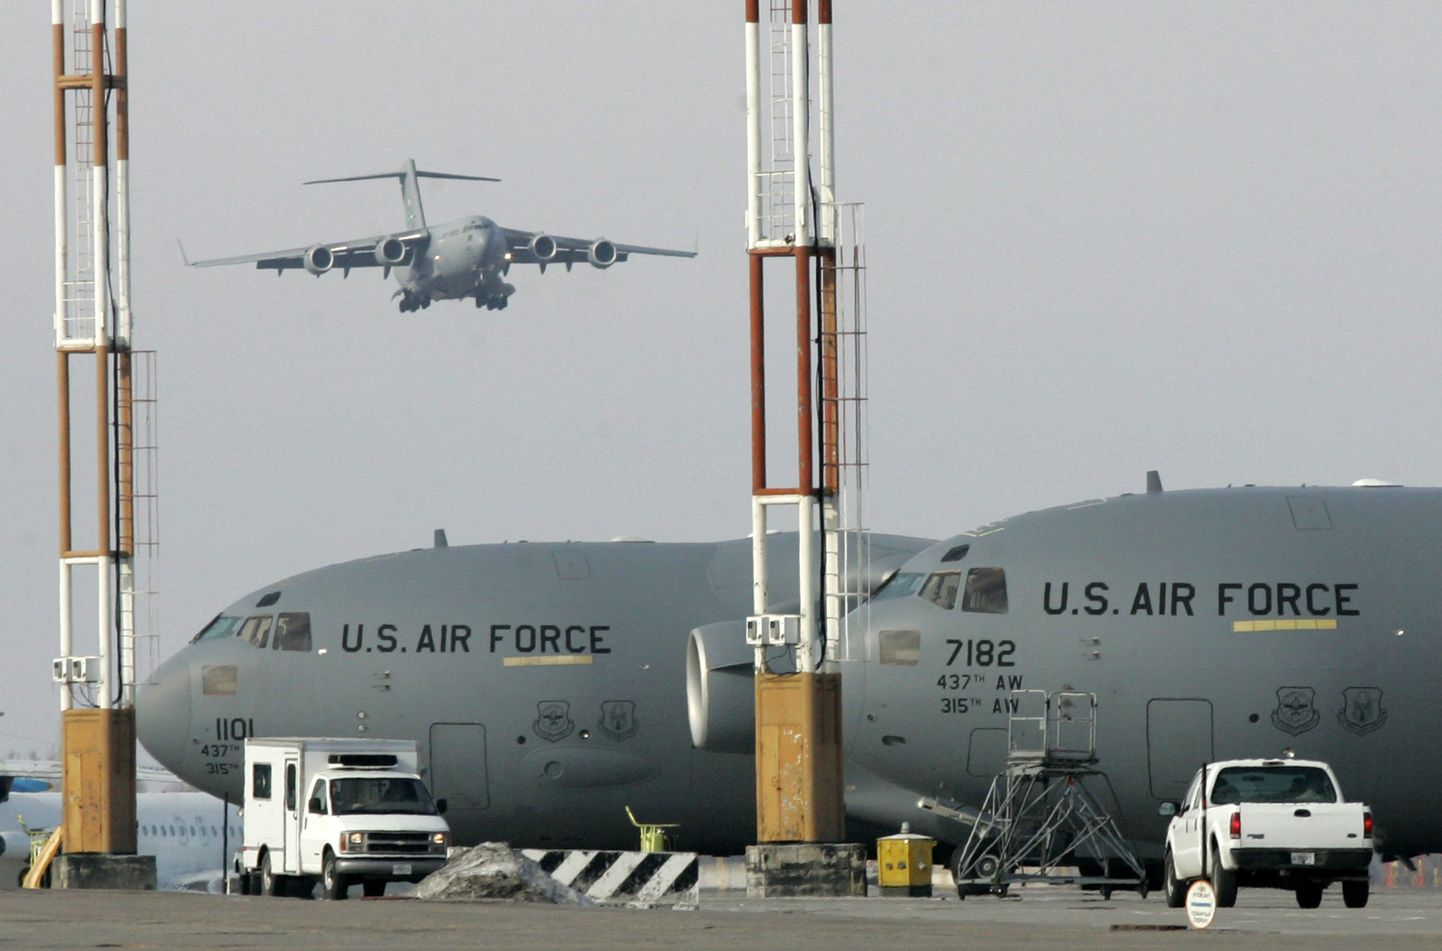 Ameerika Ühendriikide õhujõudude lennukid Kõrgõzstanis Manasi lennubaasis.